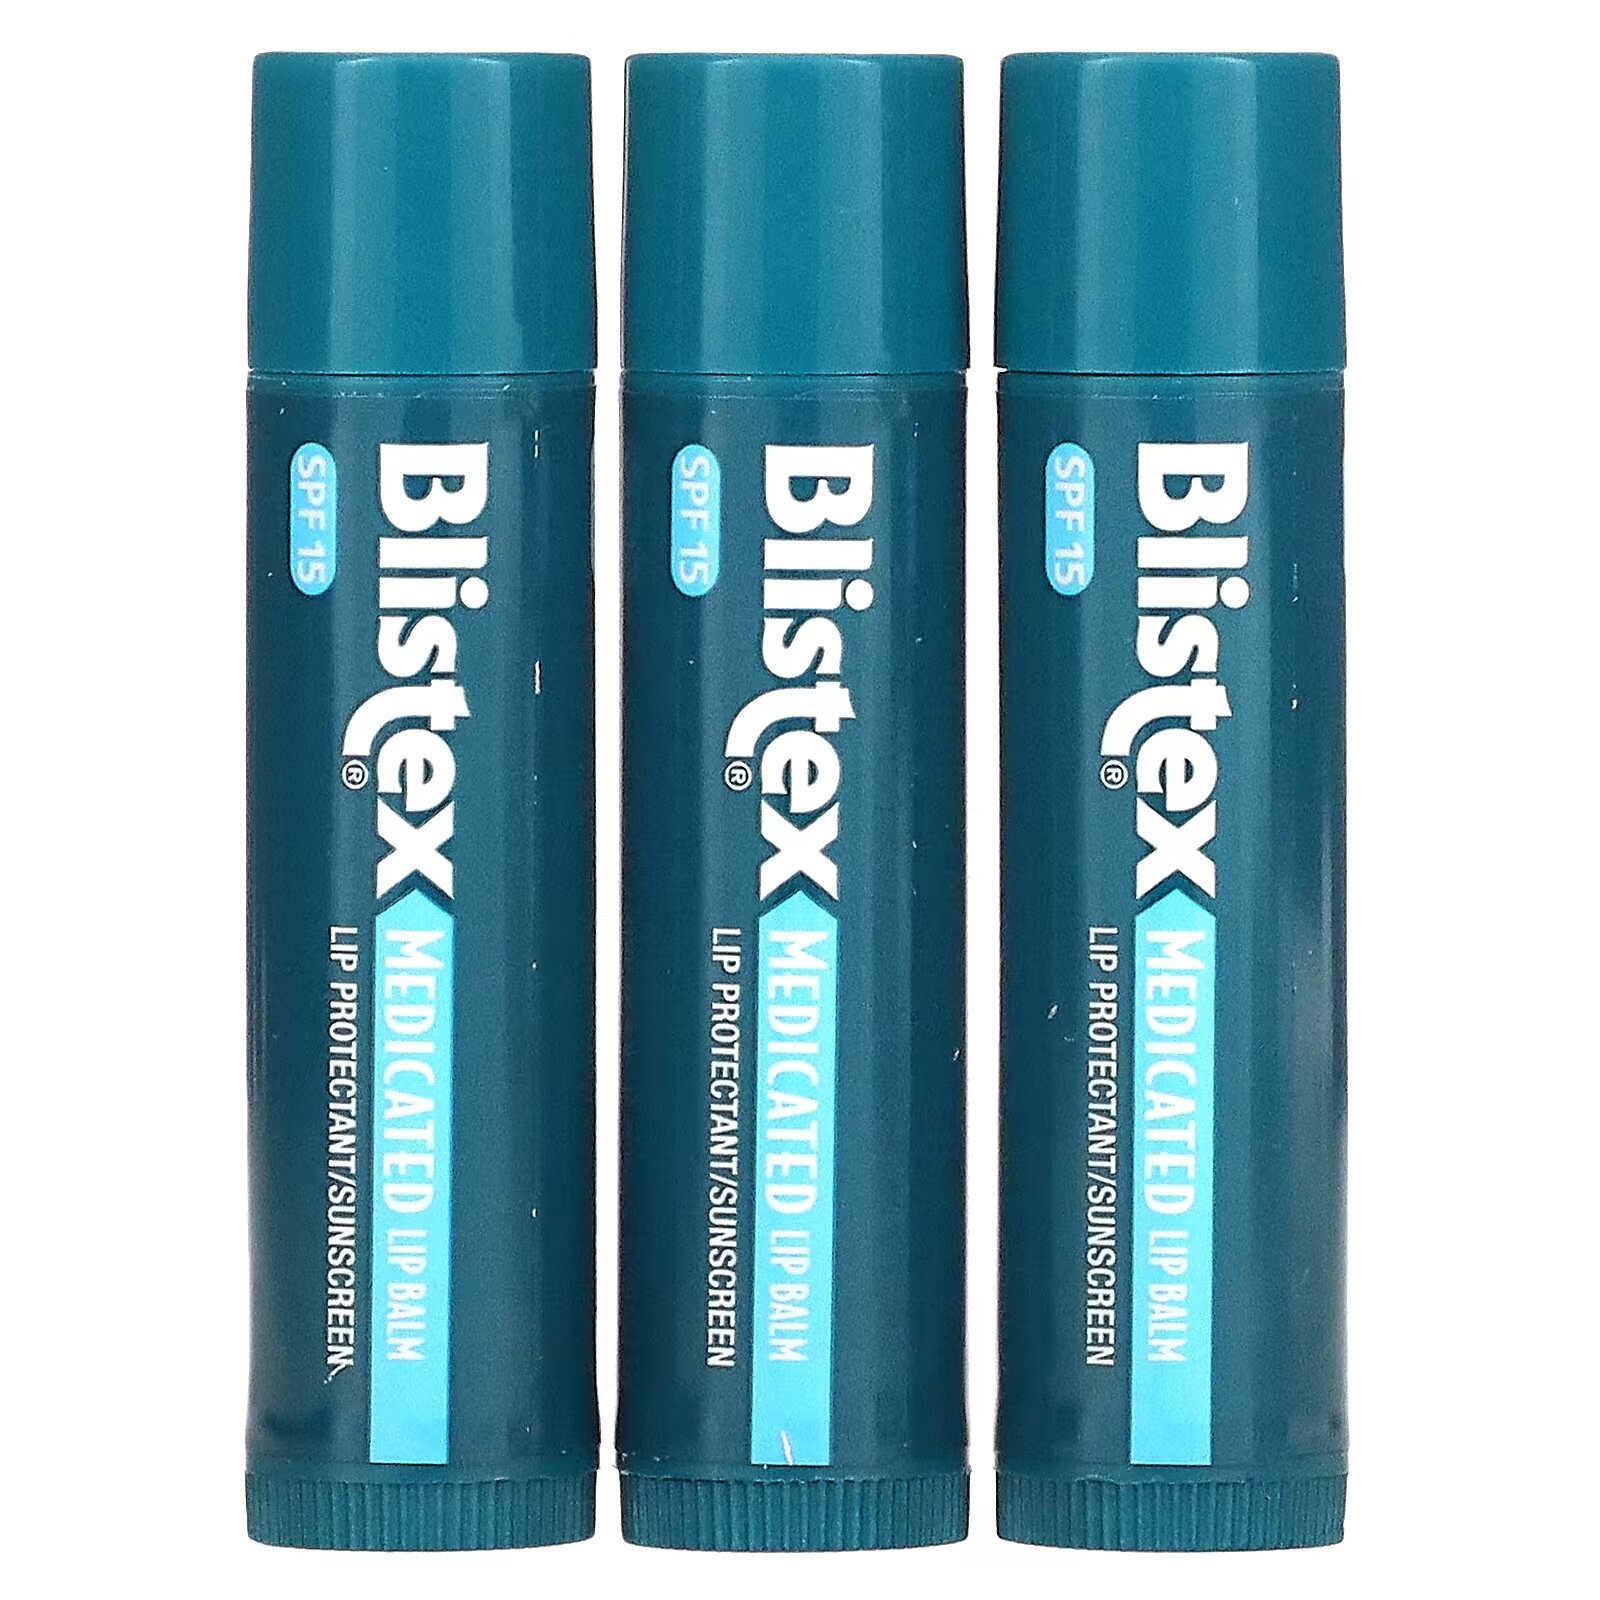 Заживляющий бальзам для губ Blistex с солнцезащитным фильтром SPF 15, в упаковке 3 бальзама по 4,25 г cliganic тонирующий бальзам для губ оттенок цвета 4 шт в упаковке по 4 25 г 0 15 унции